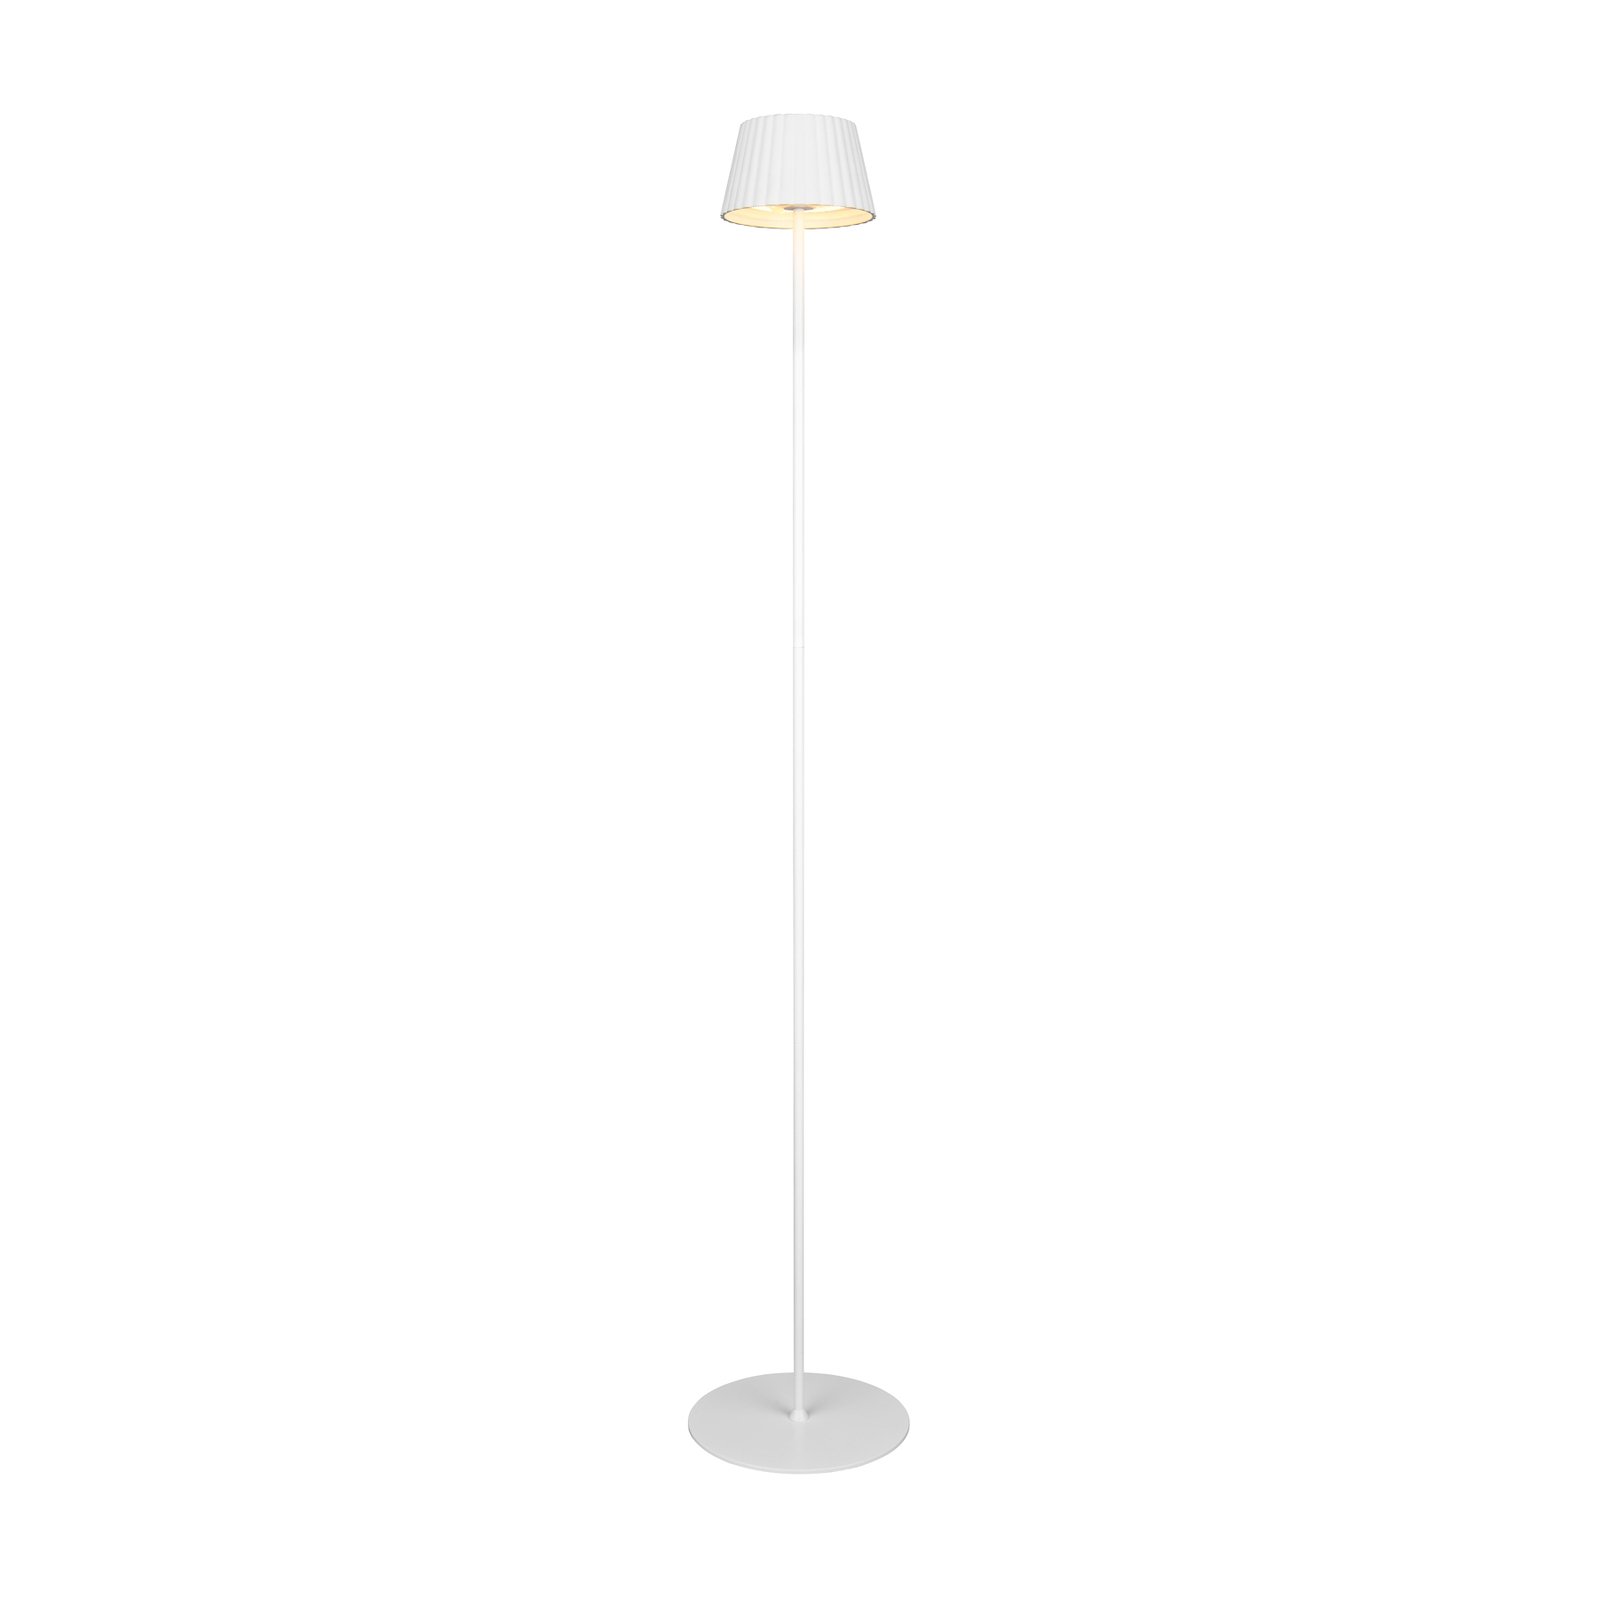 Suarez LED oppladbar gulvlampe, hvit, høyde 123 cm, metall